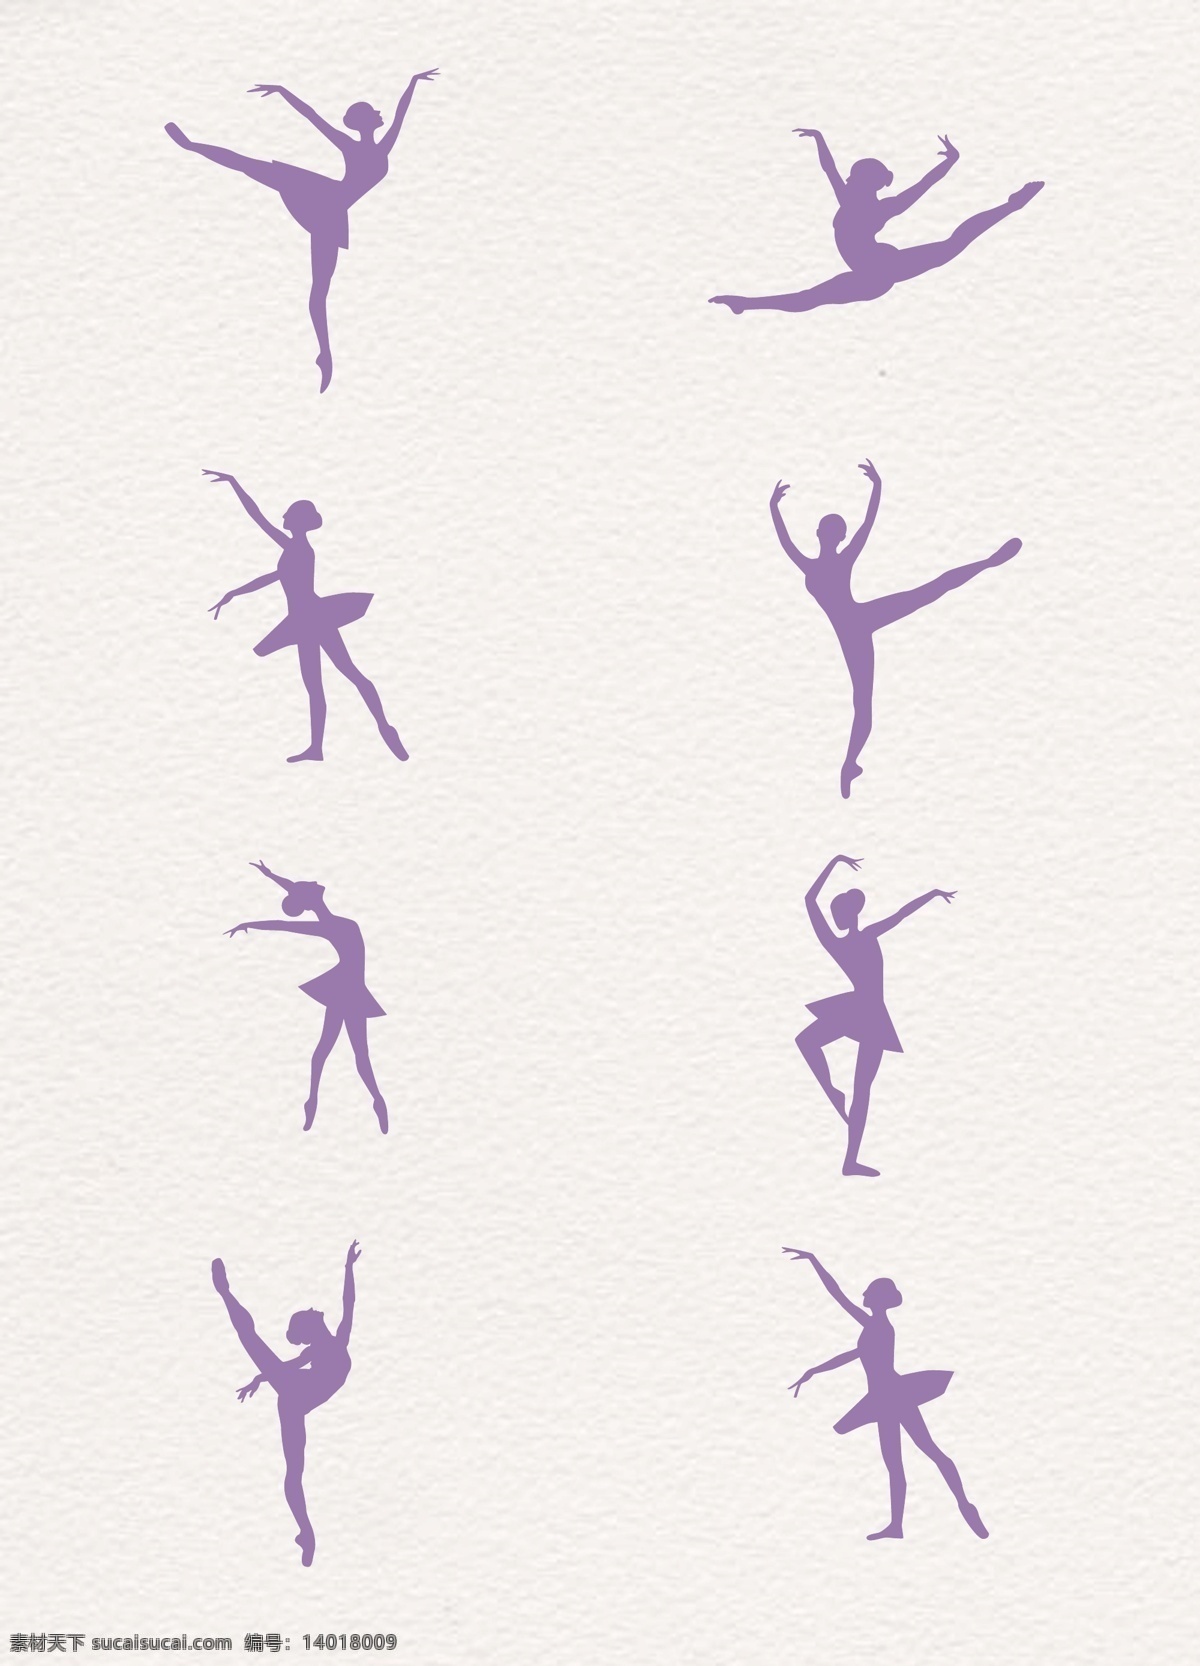 芭蕾剪影素材 芭蕾 舞蹈 形体 艺术 跳舞 歌舞 文艺 剪影 图案